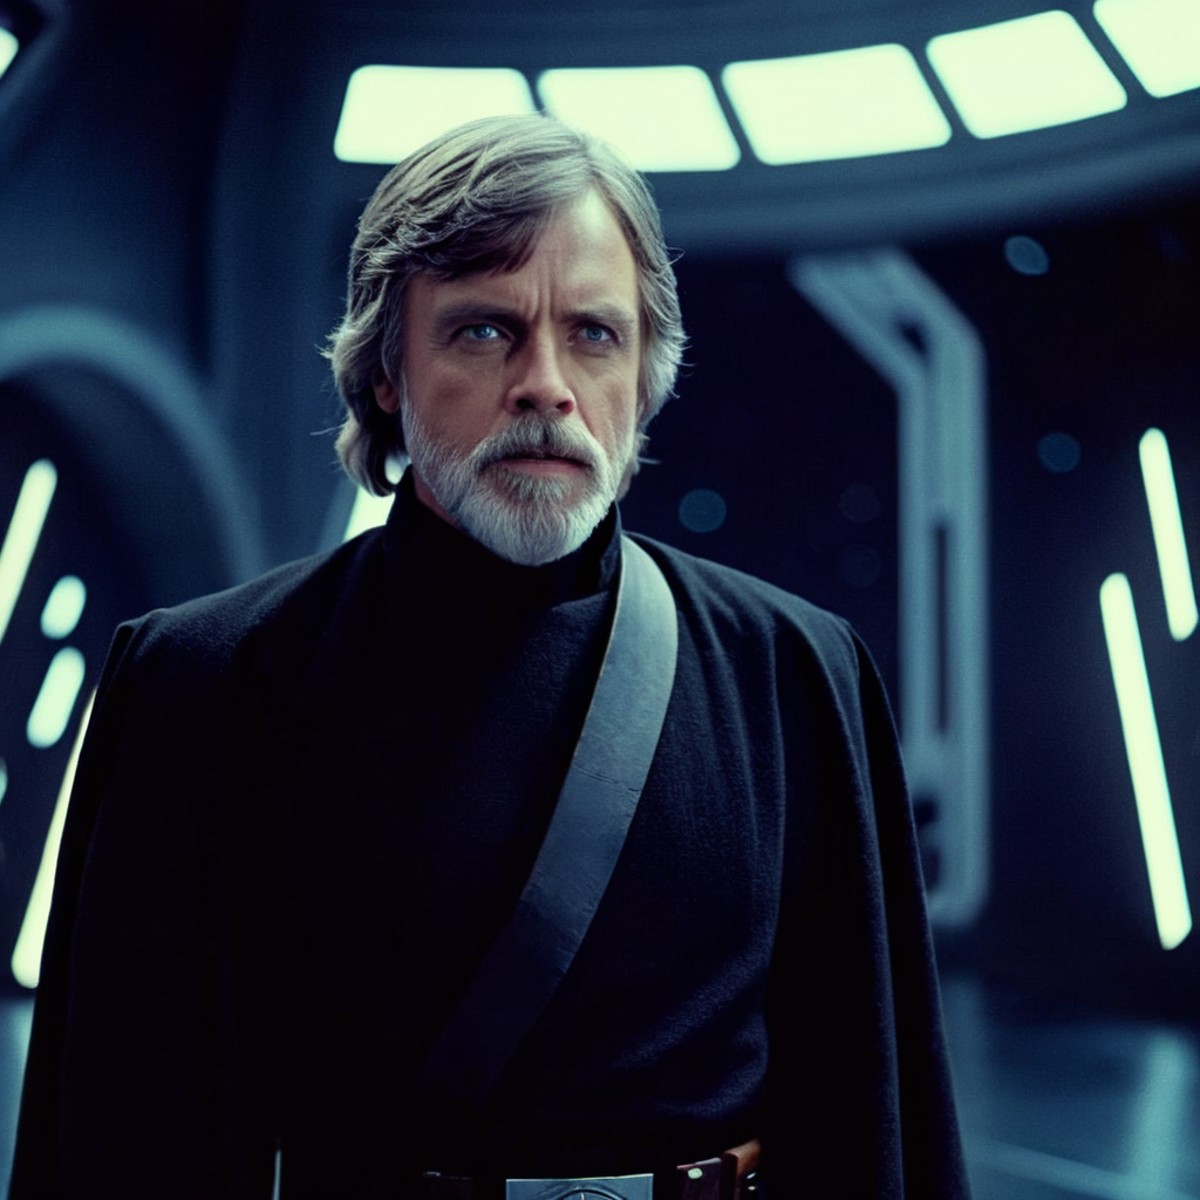 cinematic film still of  <lora:Luke Skywalker:1.2>
Luke Skywalker a man with a grey beard and a black jacket in star wars ...